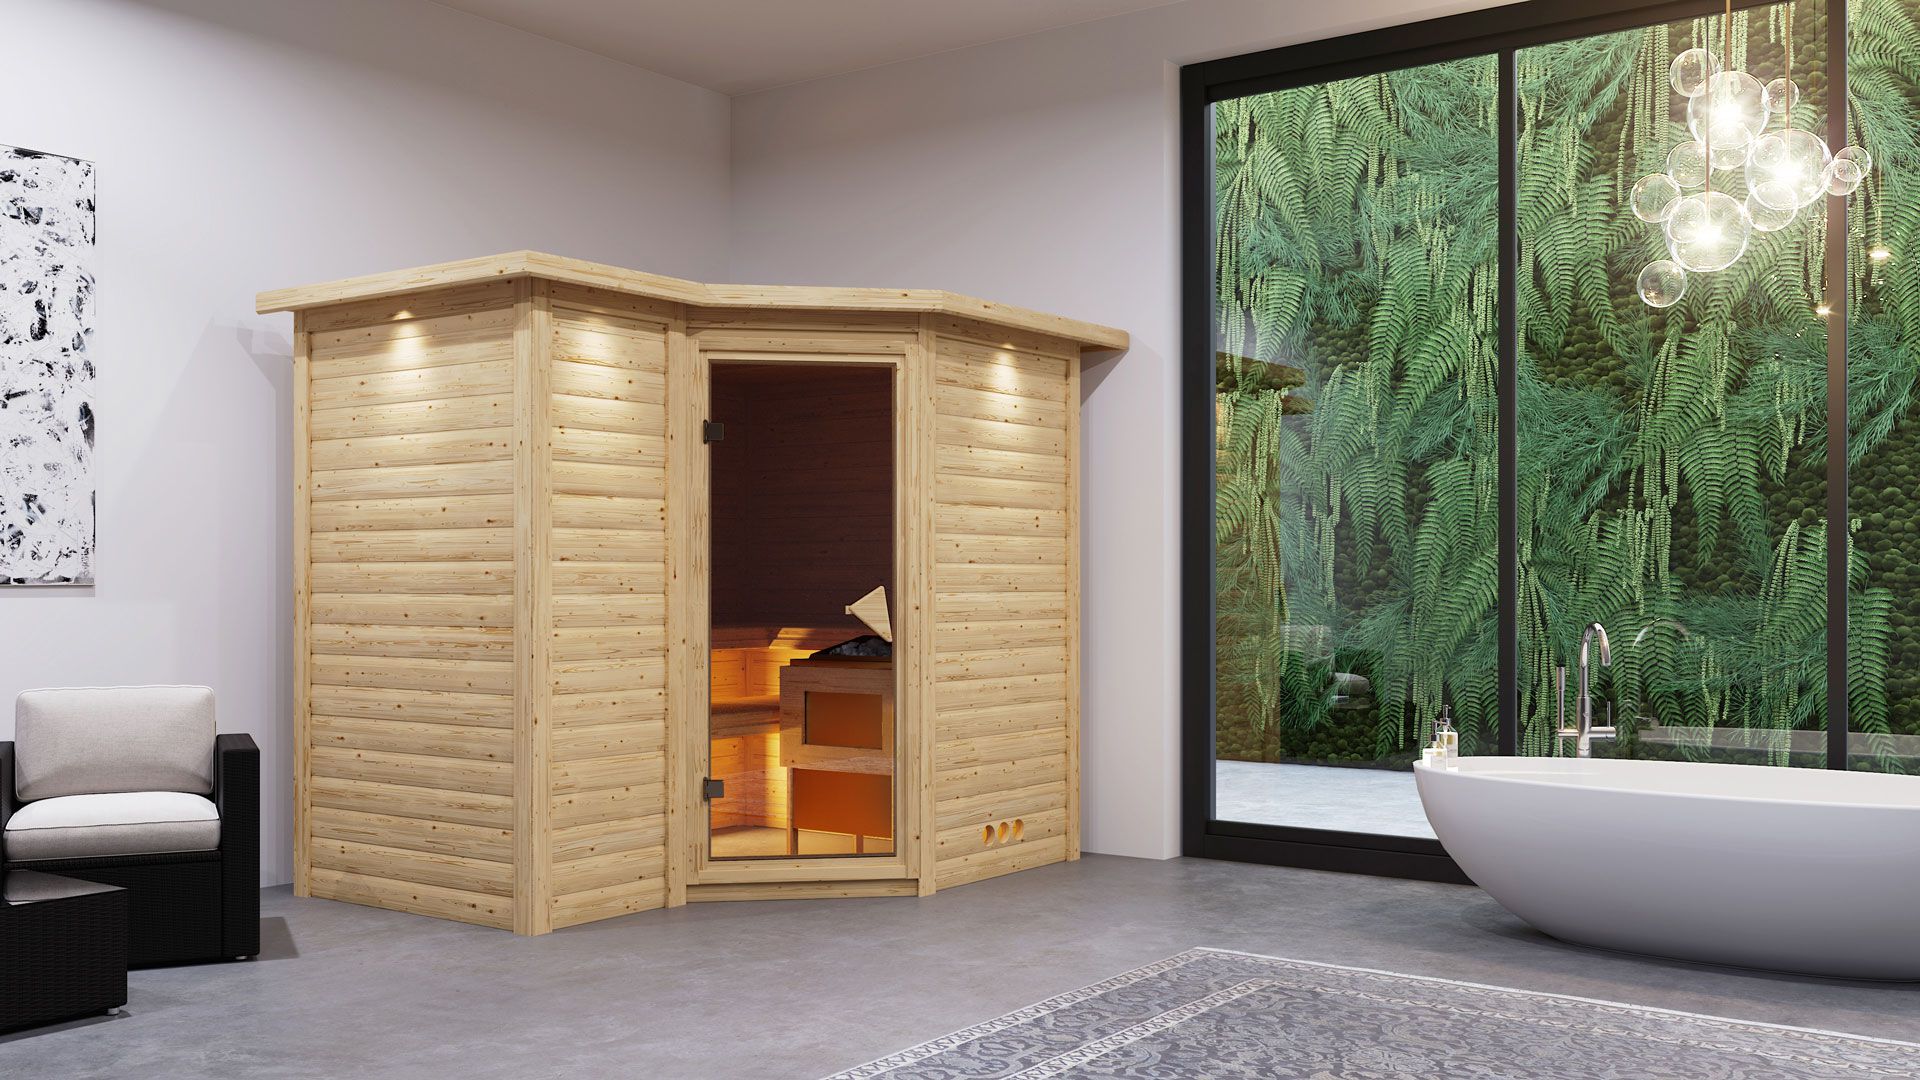 Sauna "Tjara 2" SET mit bronzierter Tür und Kranz - Farbe: Natur, Ofen externe Steuerung easy 9 kW Edelstahl - 264 x 198 x 212 cm (B x T x H)